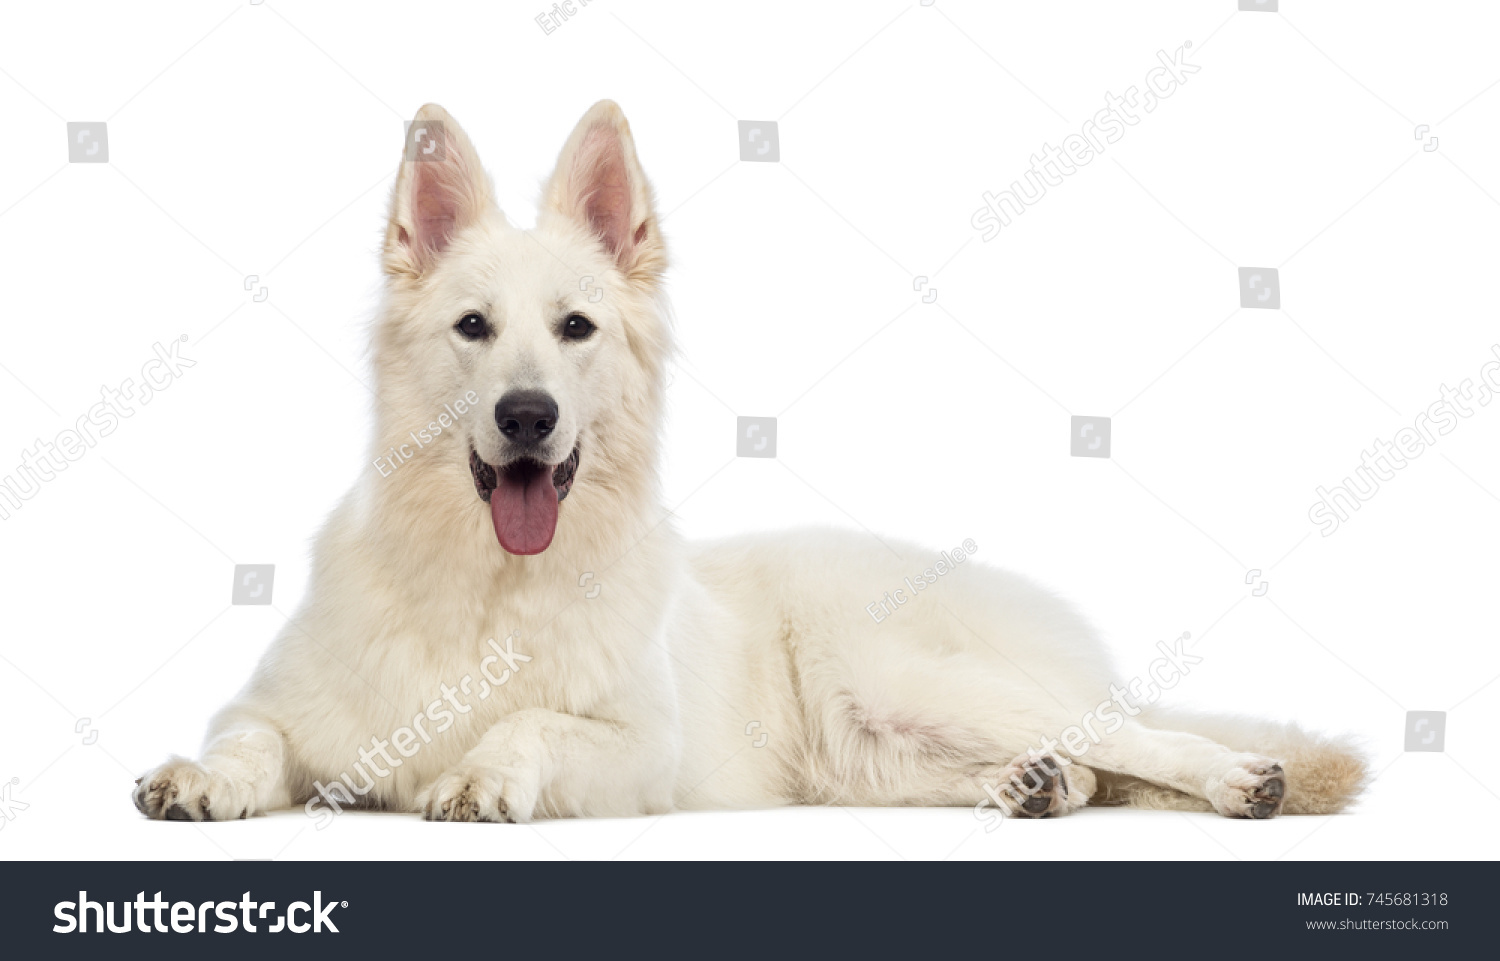 Swiss Shepherd Dog 5 Years Old Stock Photo 745681318 | Shutterstock